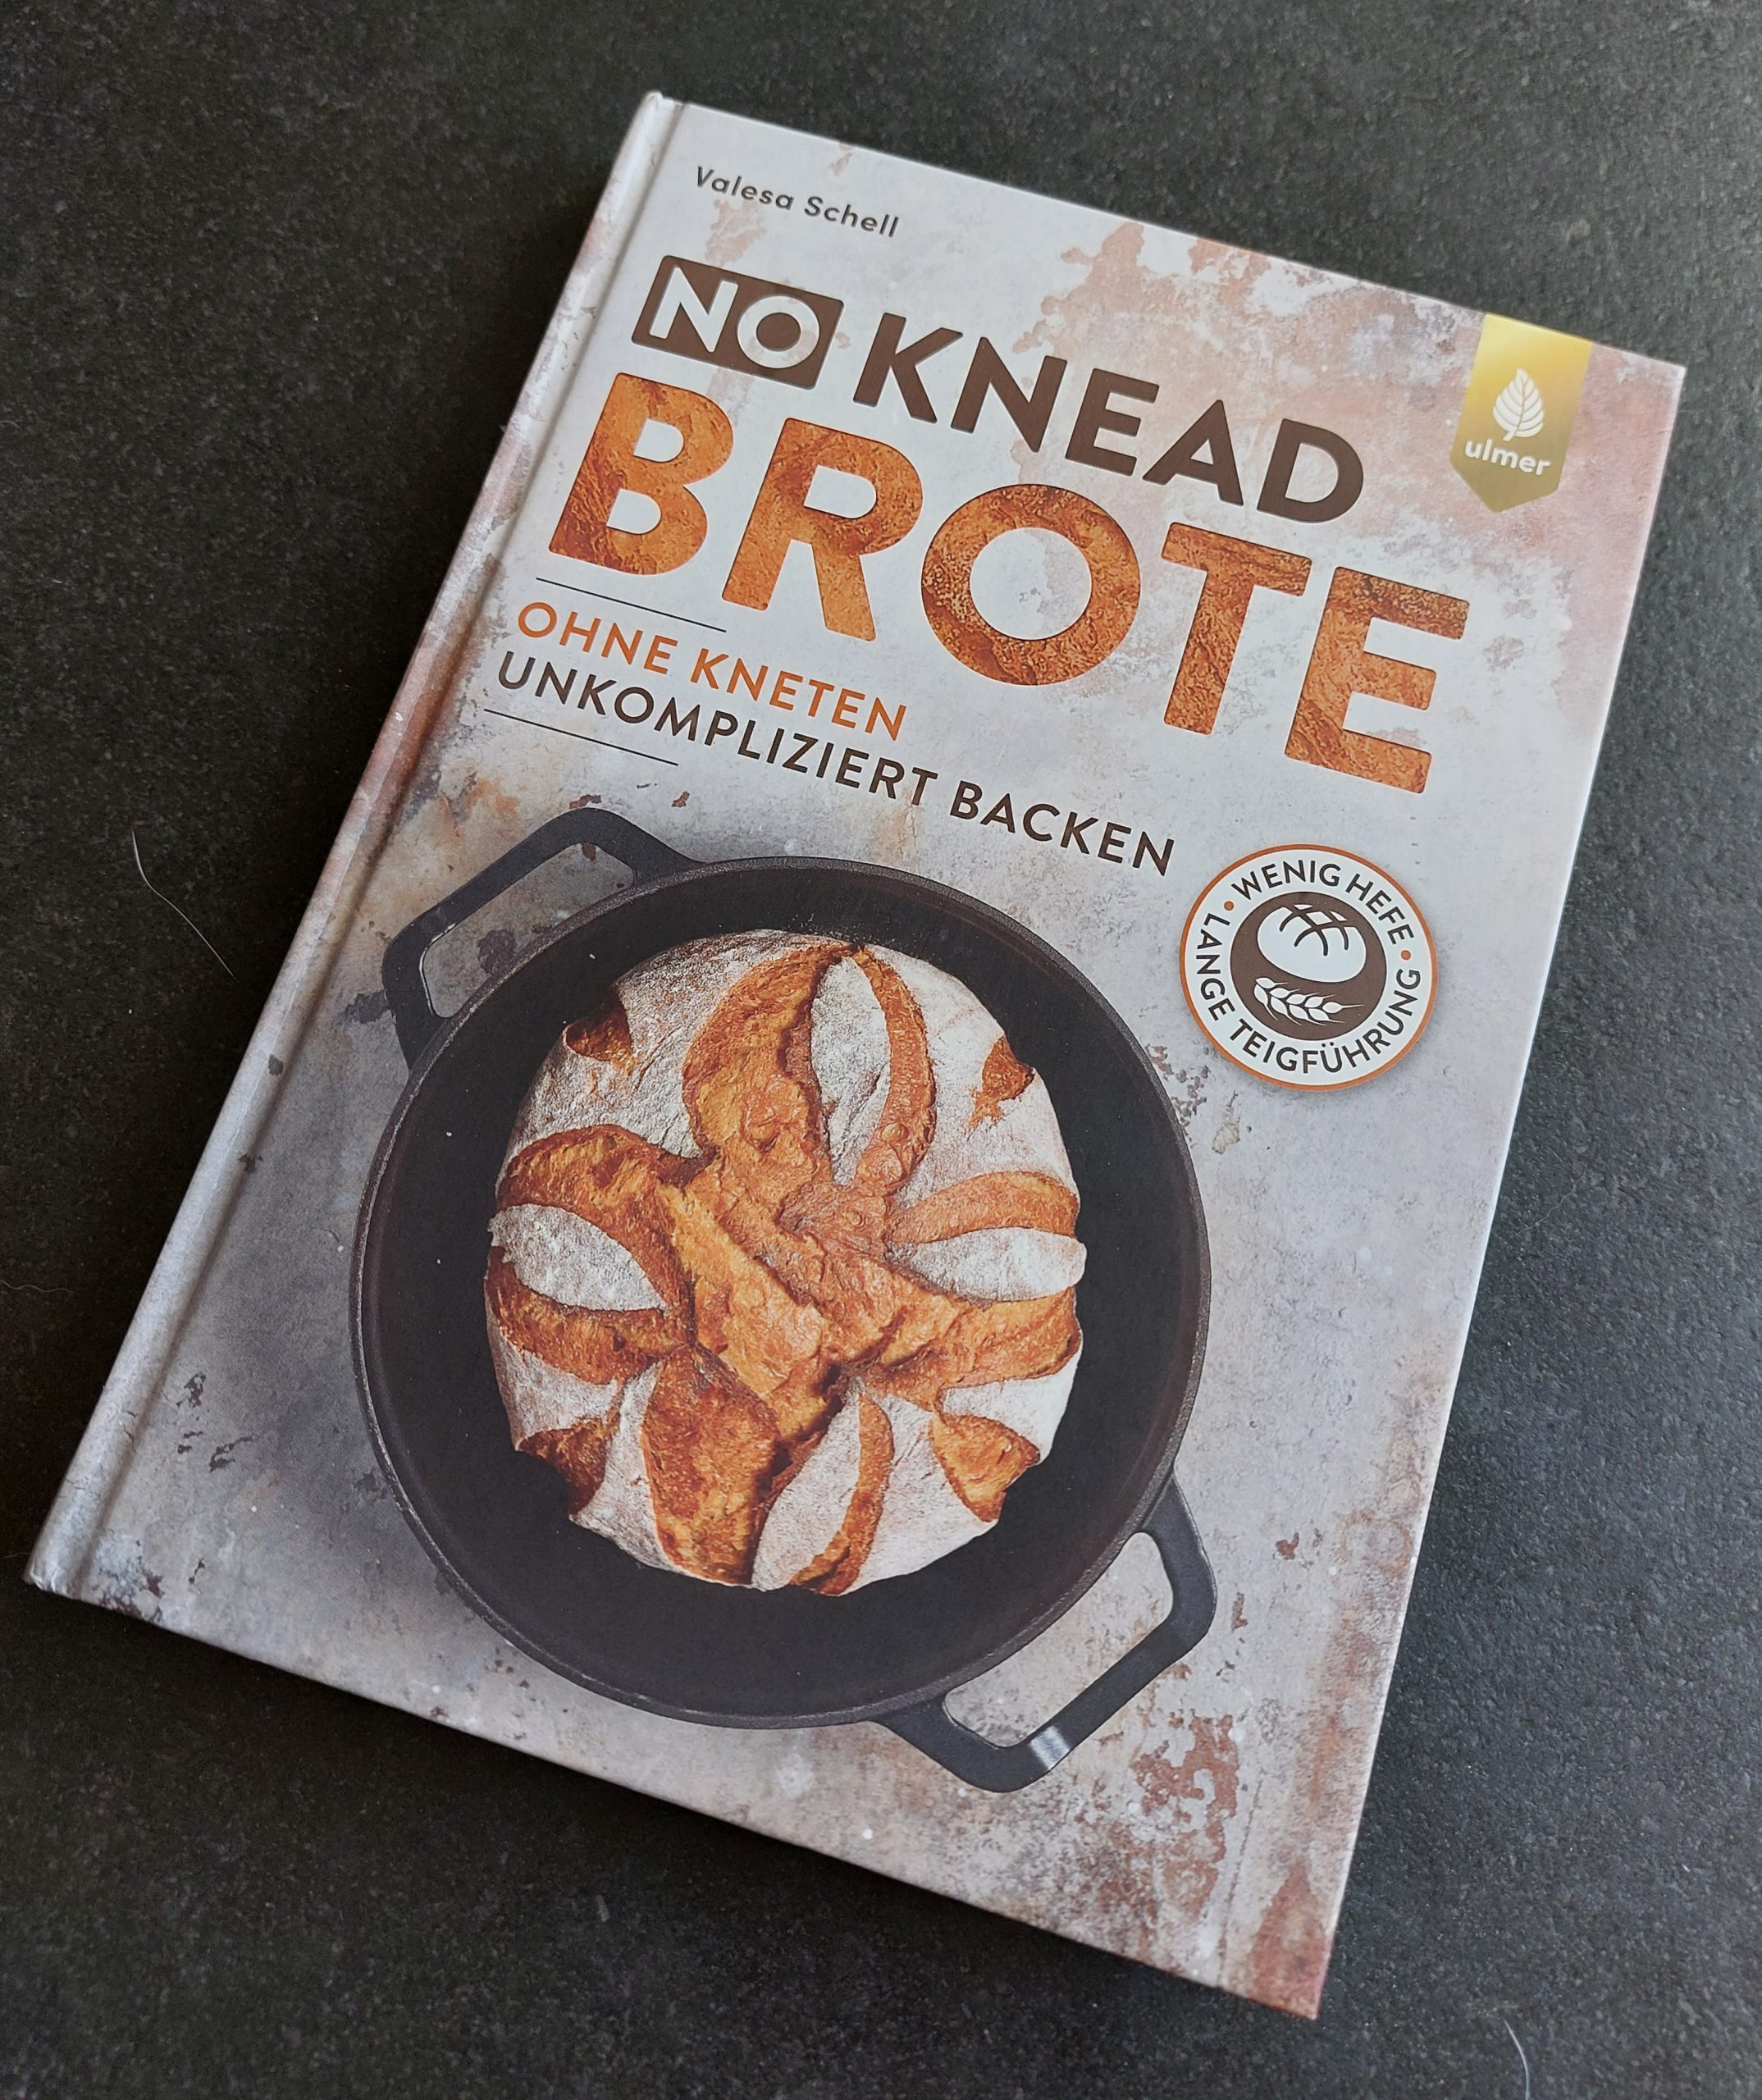 No Knead Brote – Ohne kneten unkompliziert backen-Valesa Schell